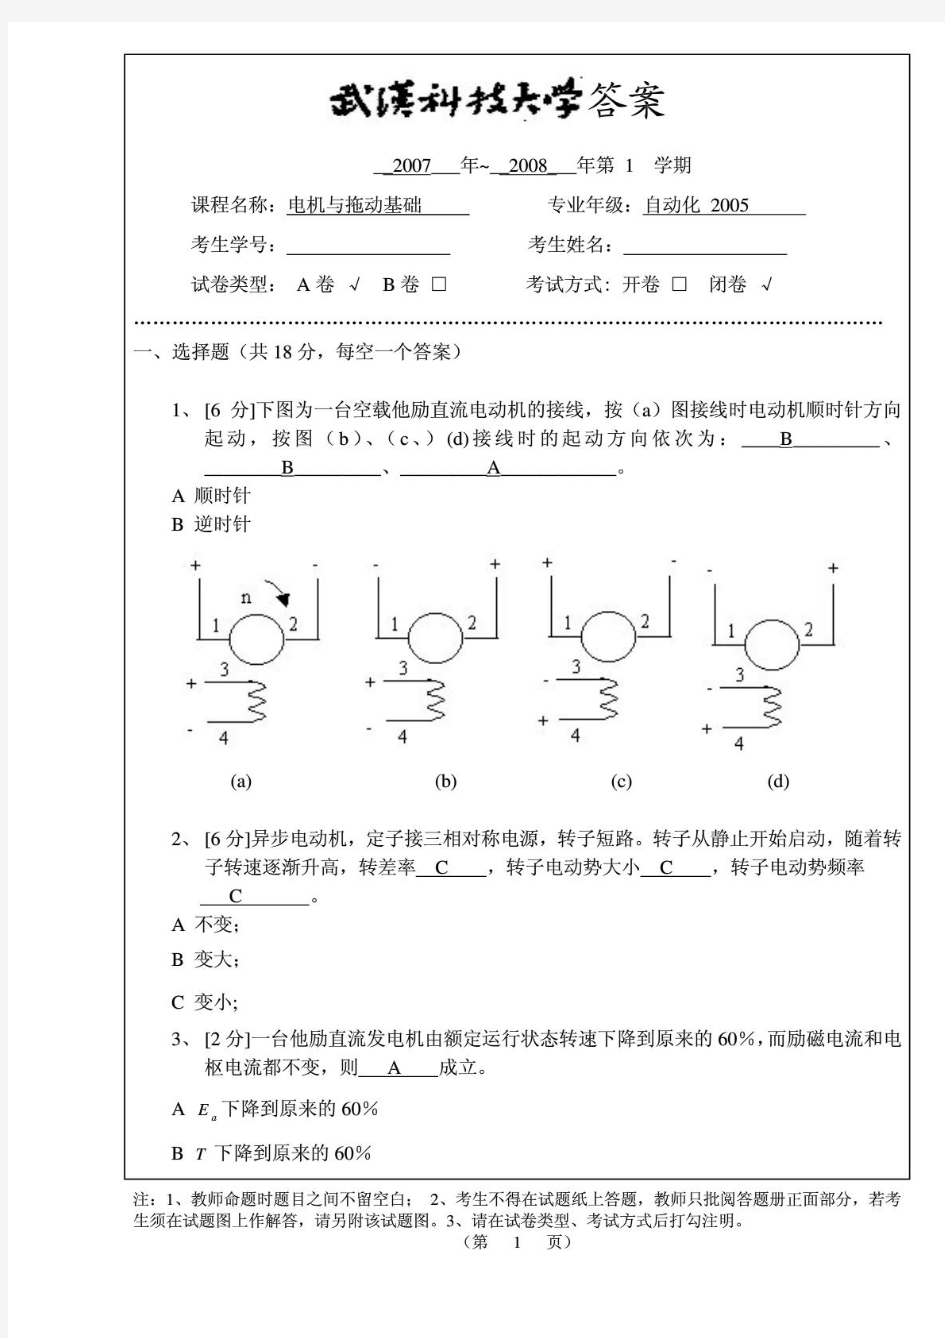 武汉科技大学电机与拖动期末考试题(附答案)